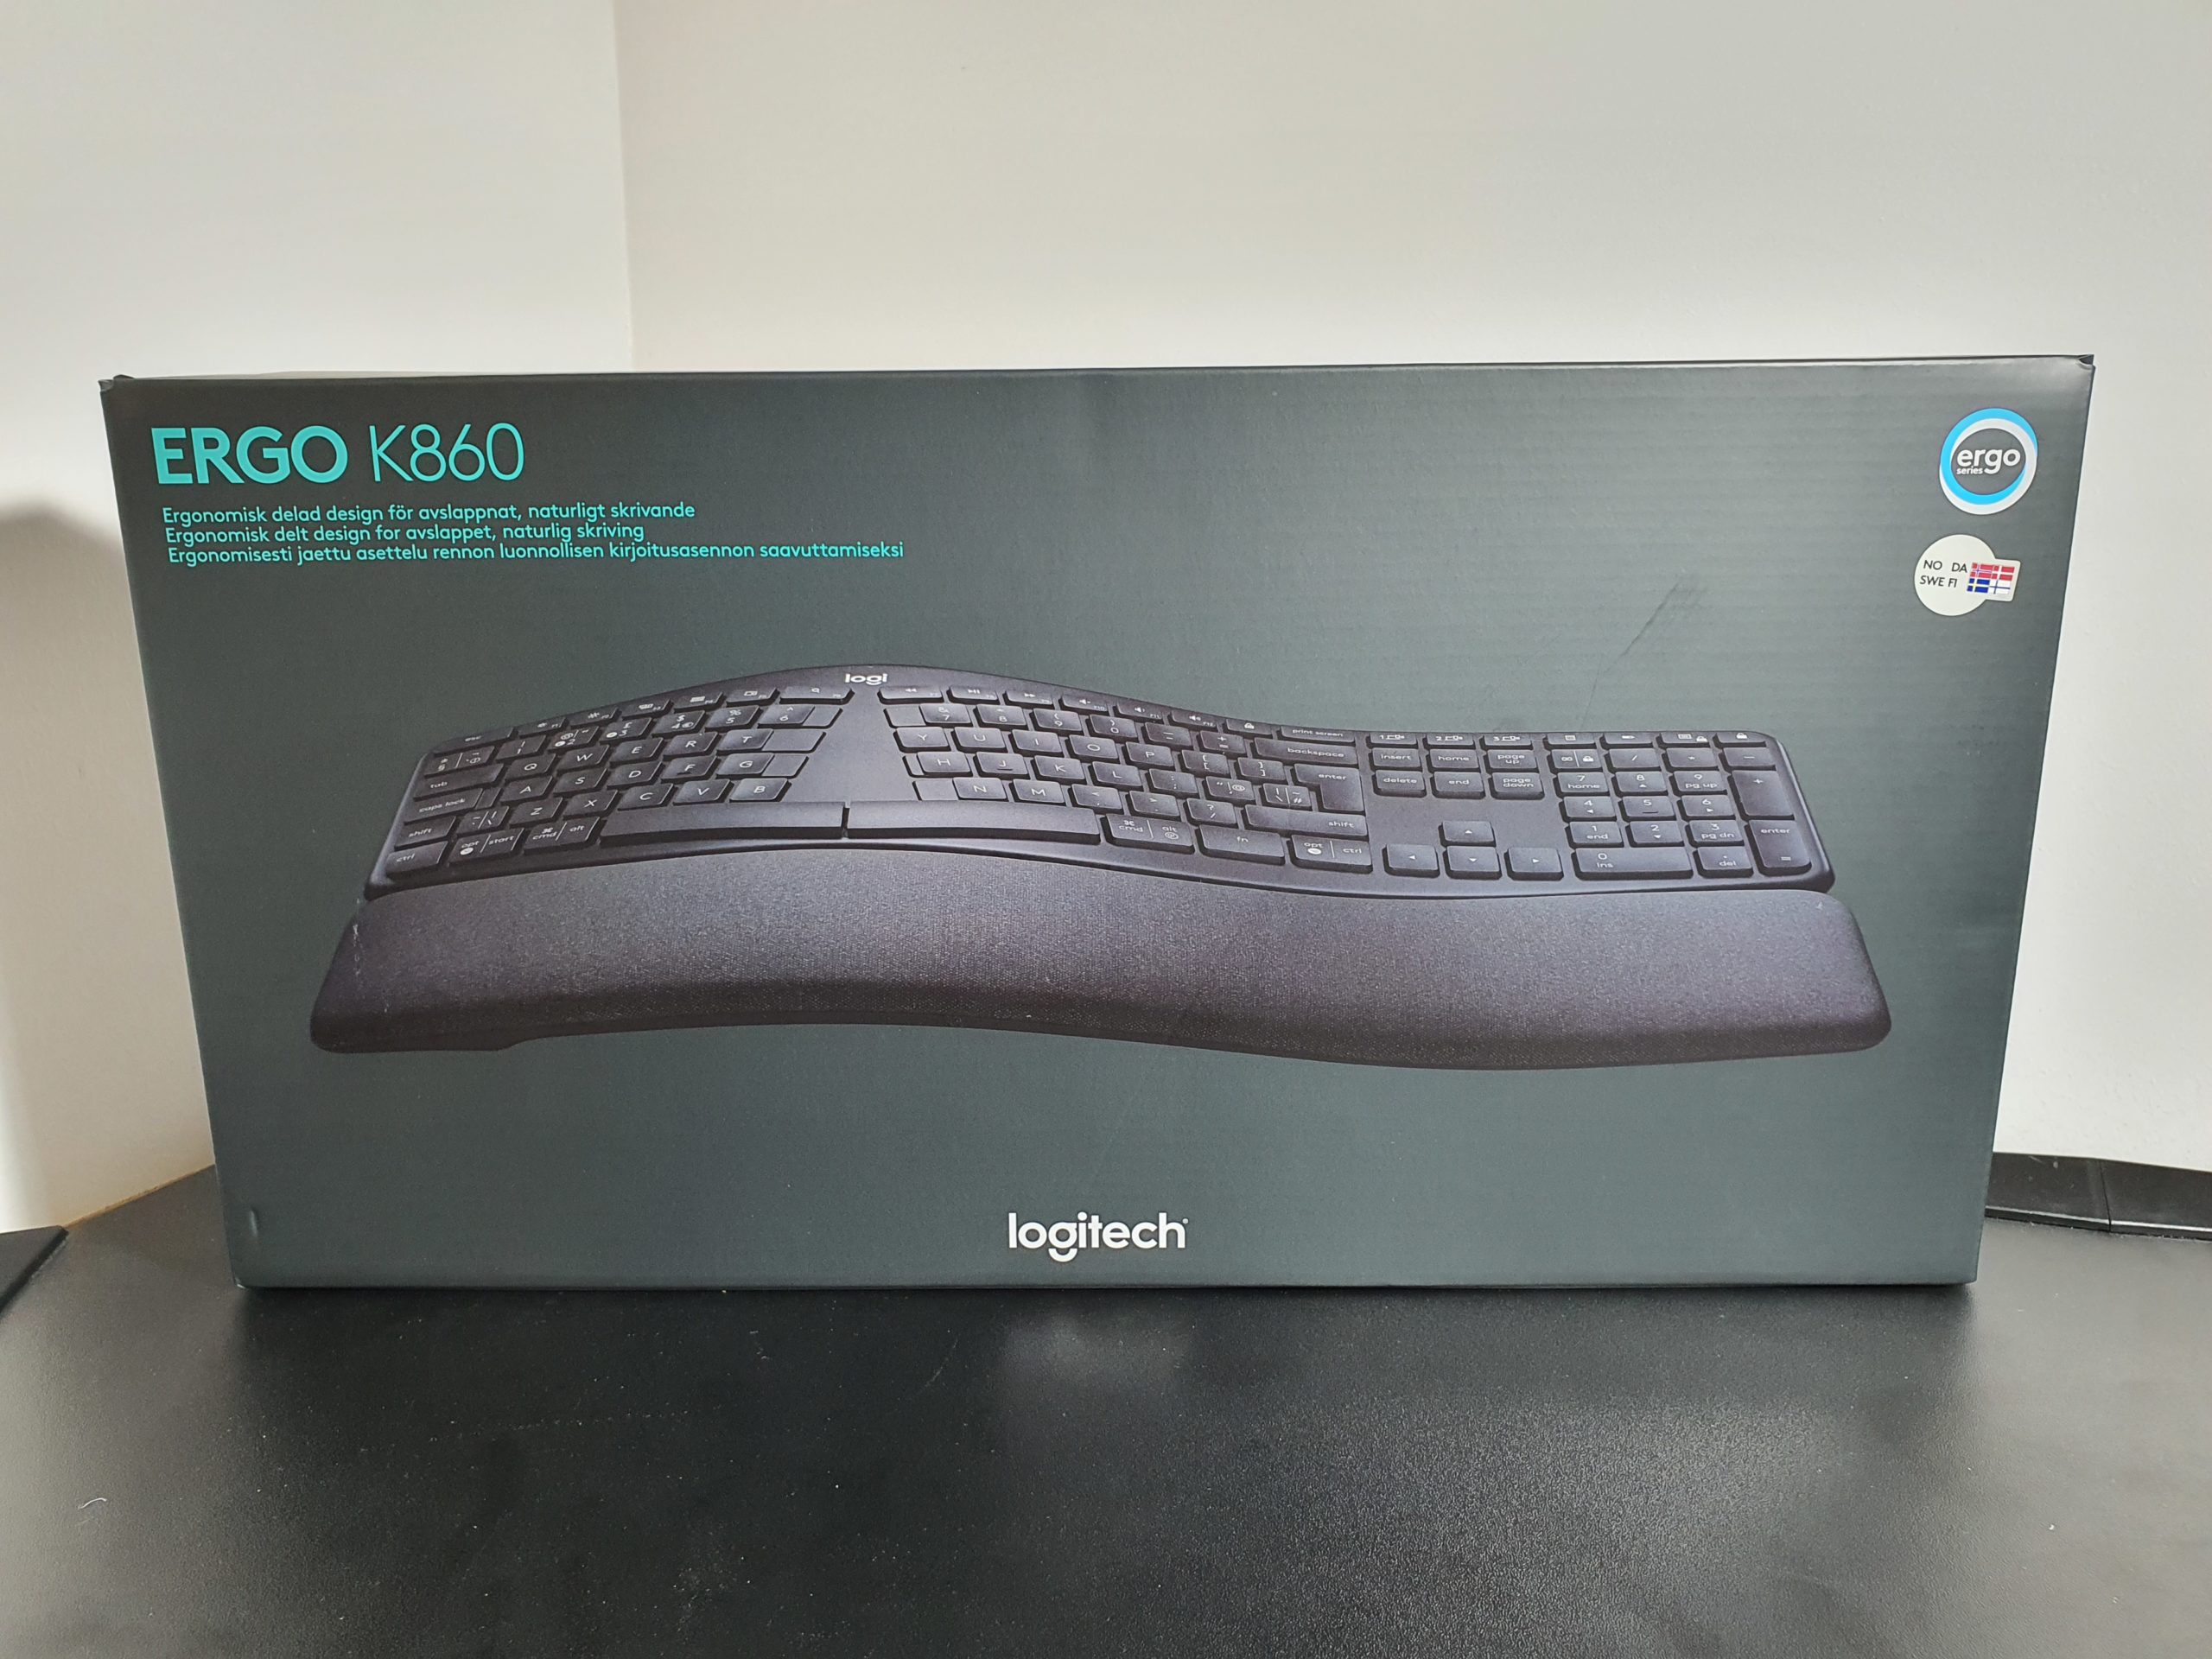 Test: Logitech Ergo K860 ergonomisk tastatur | eReviews.dk